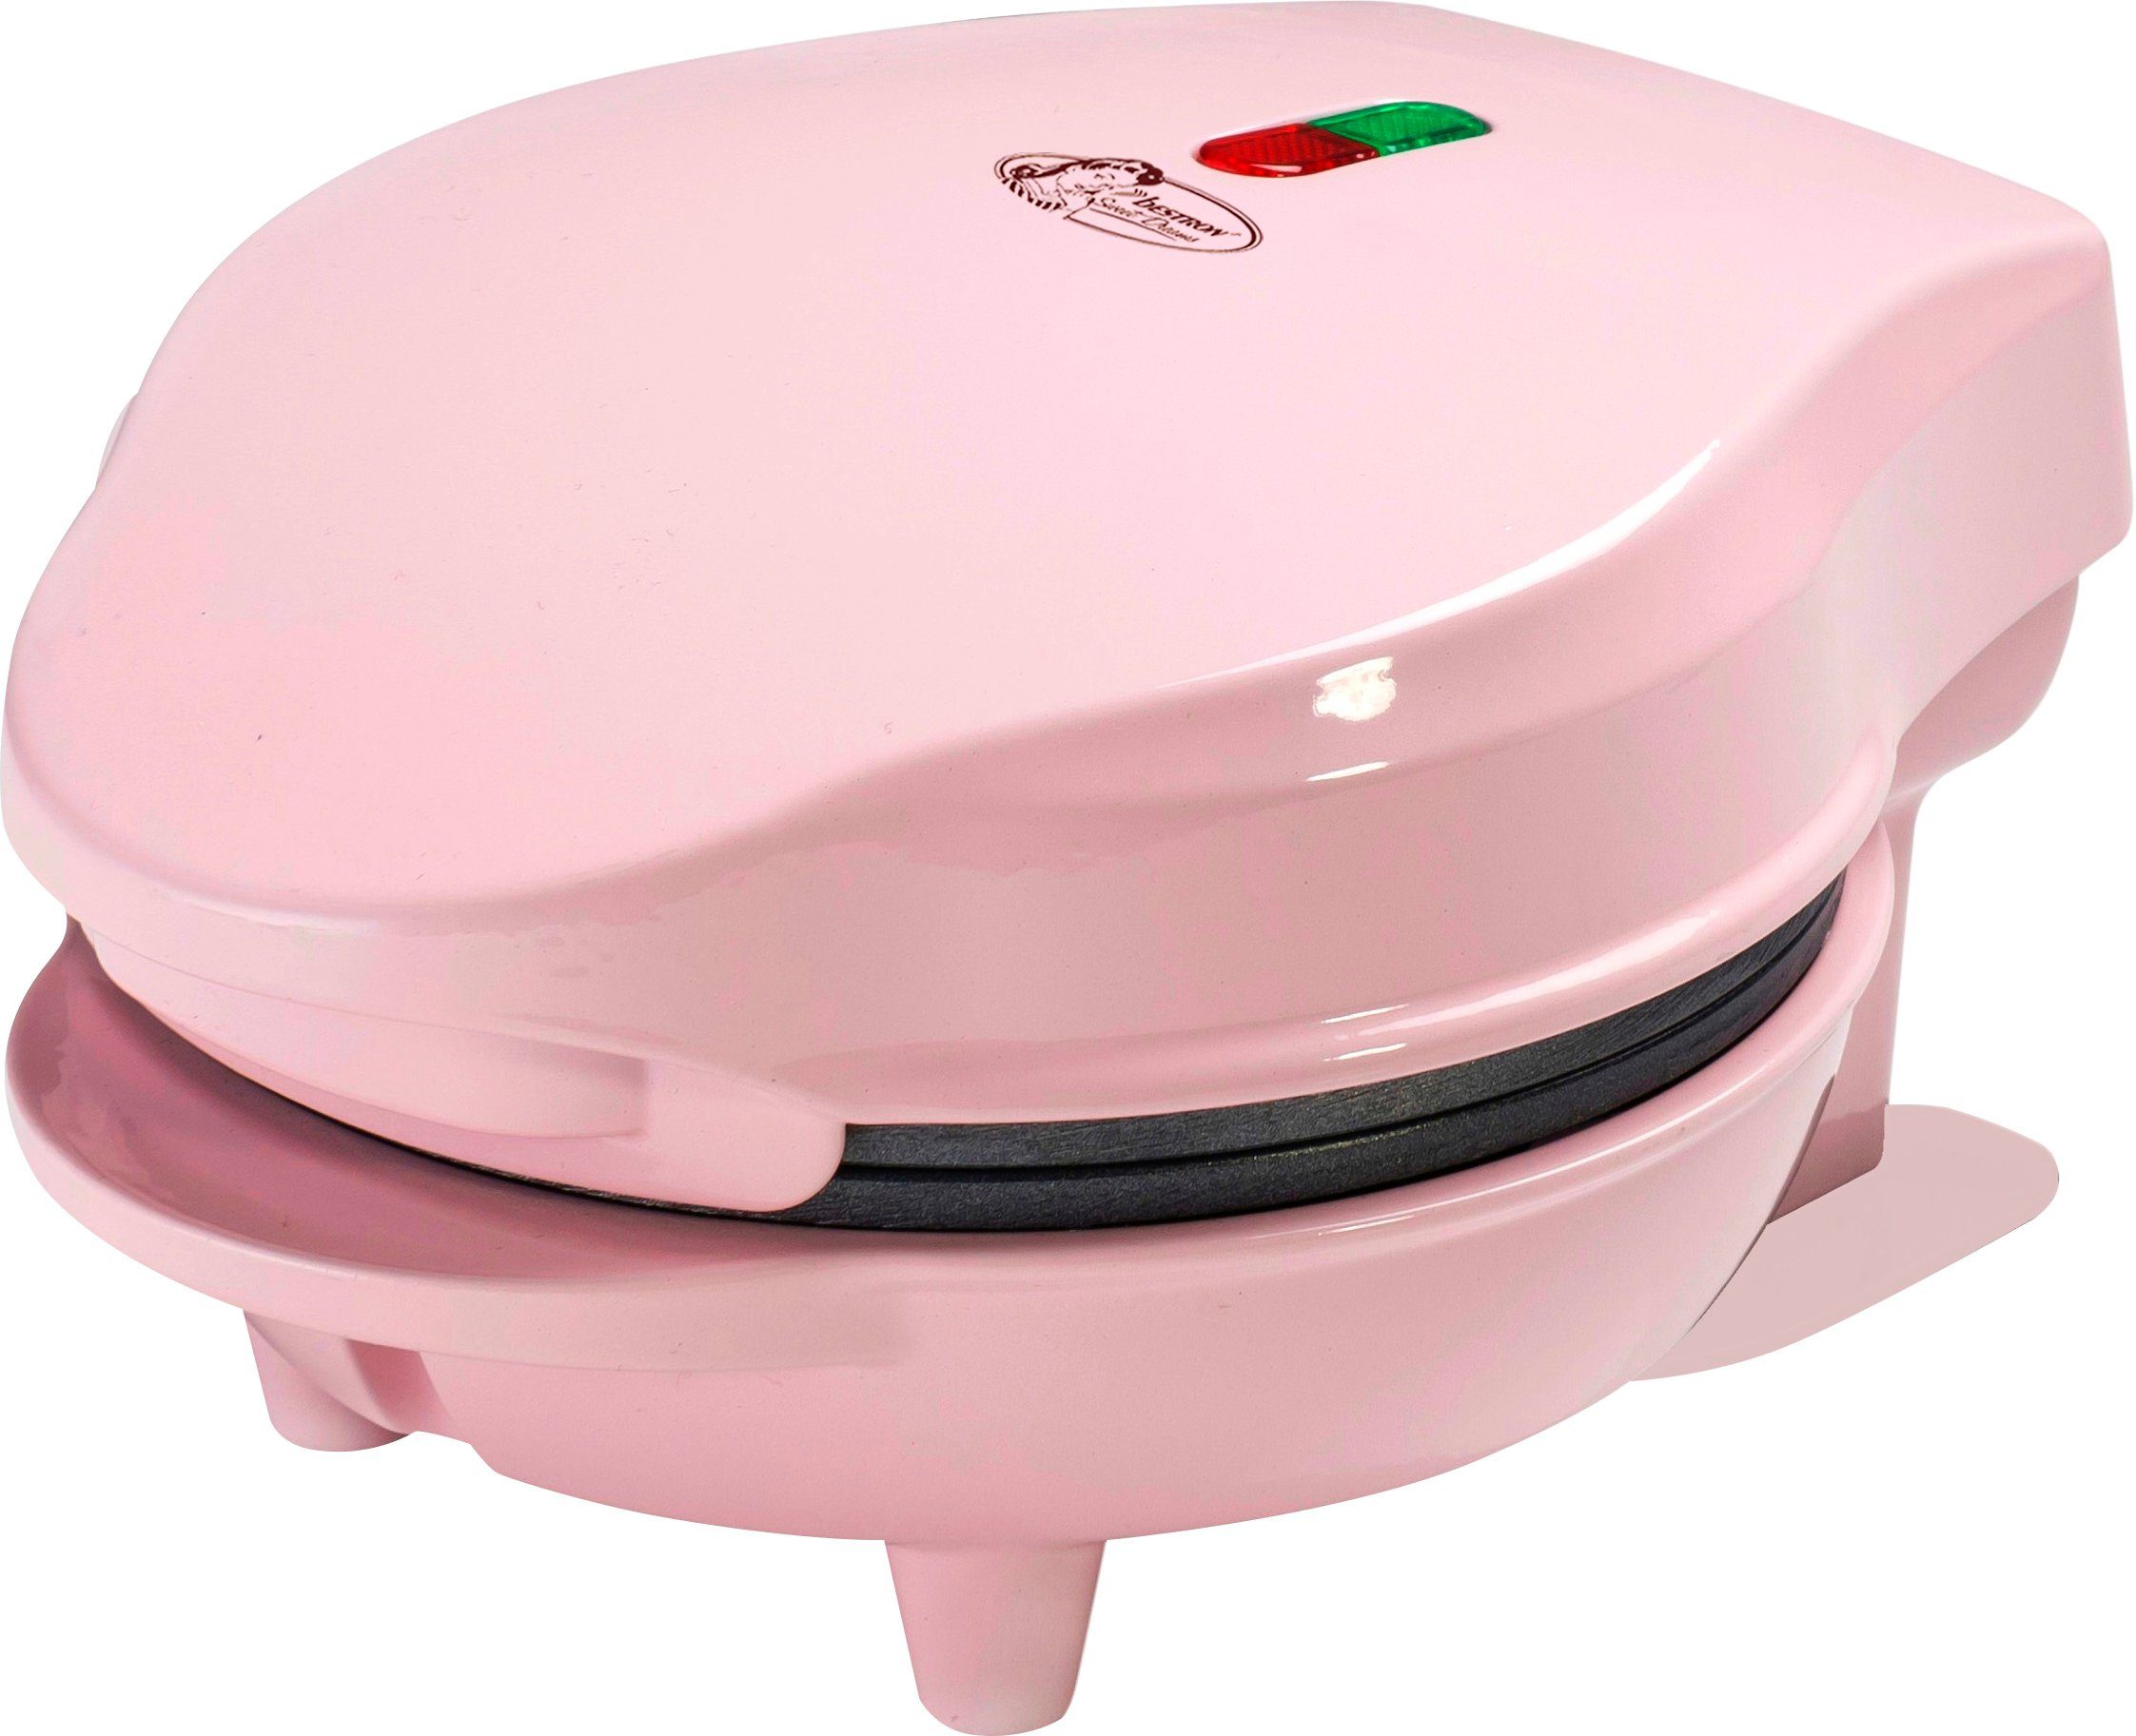 bestron wafelijzer amw500p mini voor klassieke wafels, kleine wafelmaker met antiaanbaklaag roze